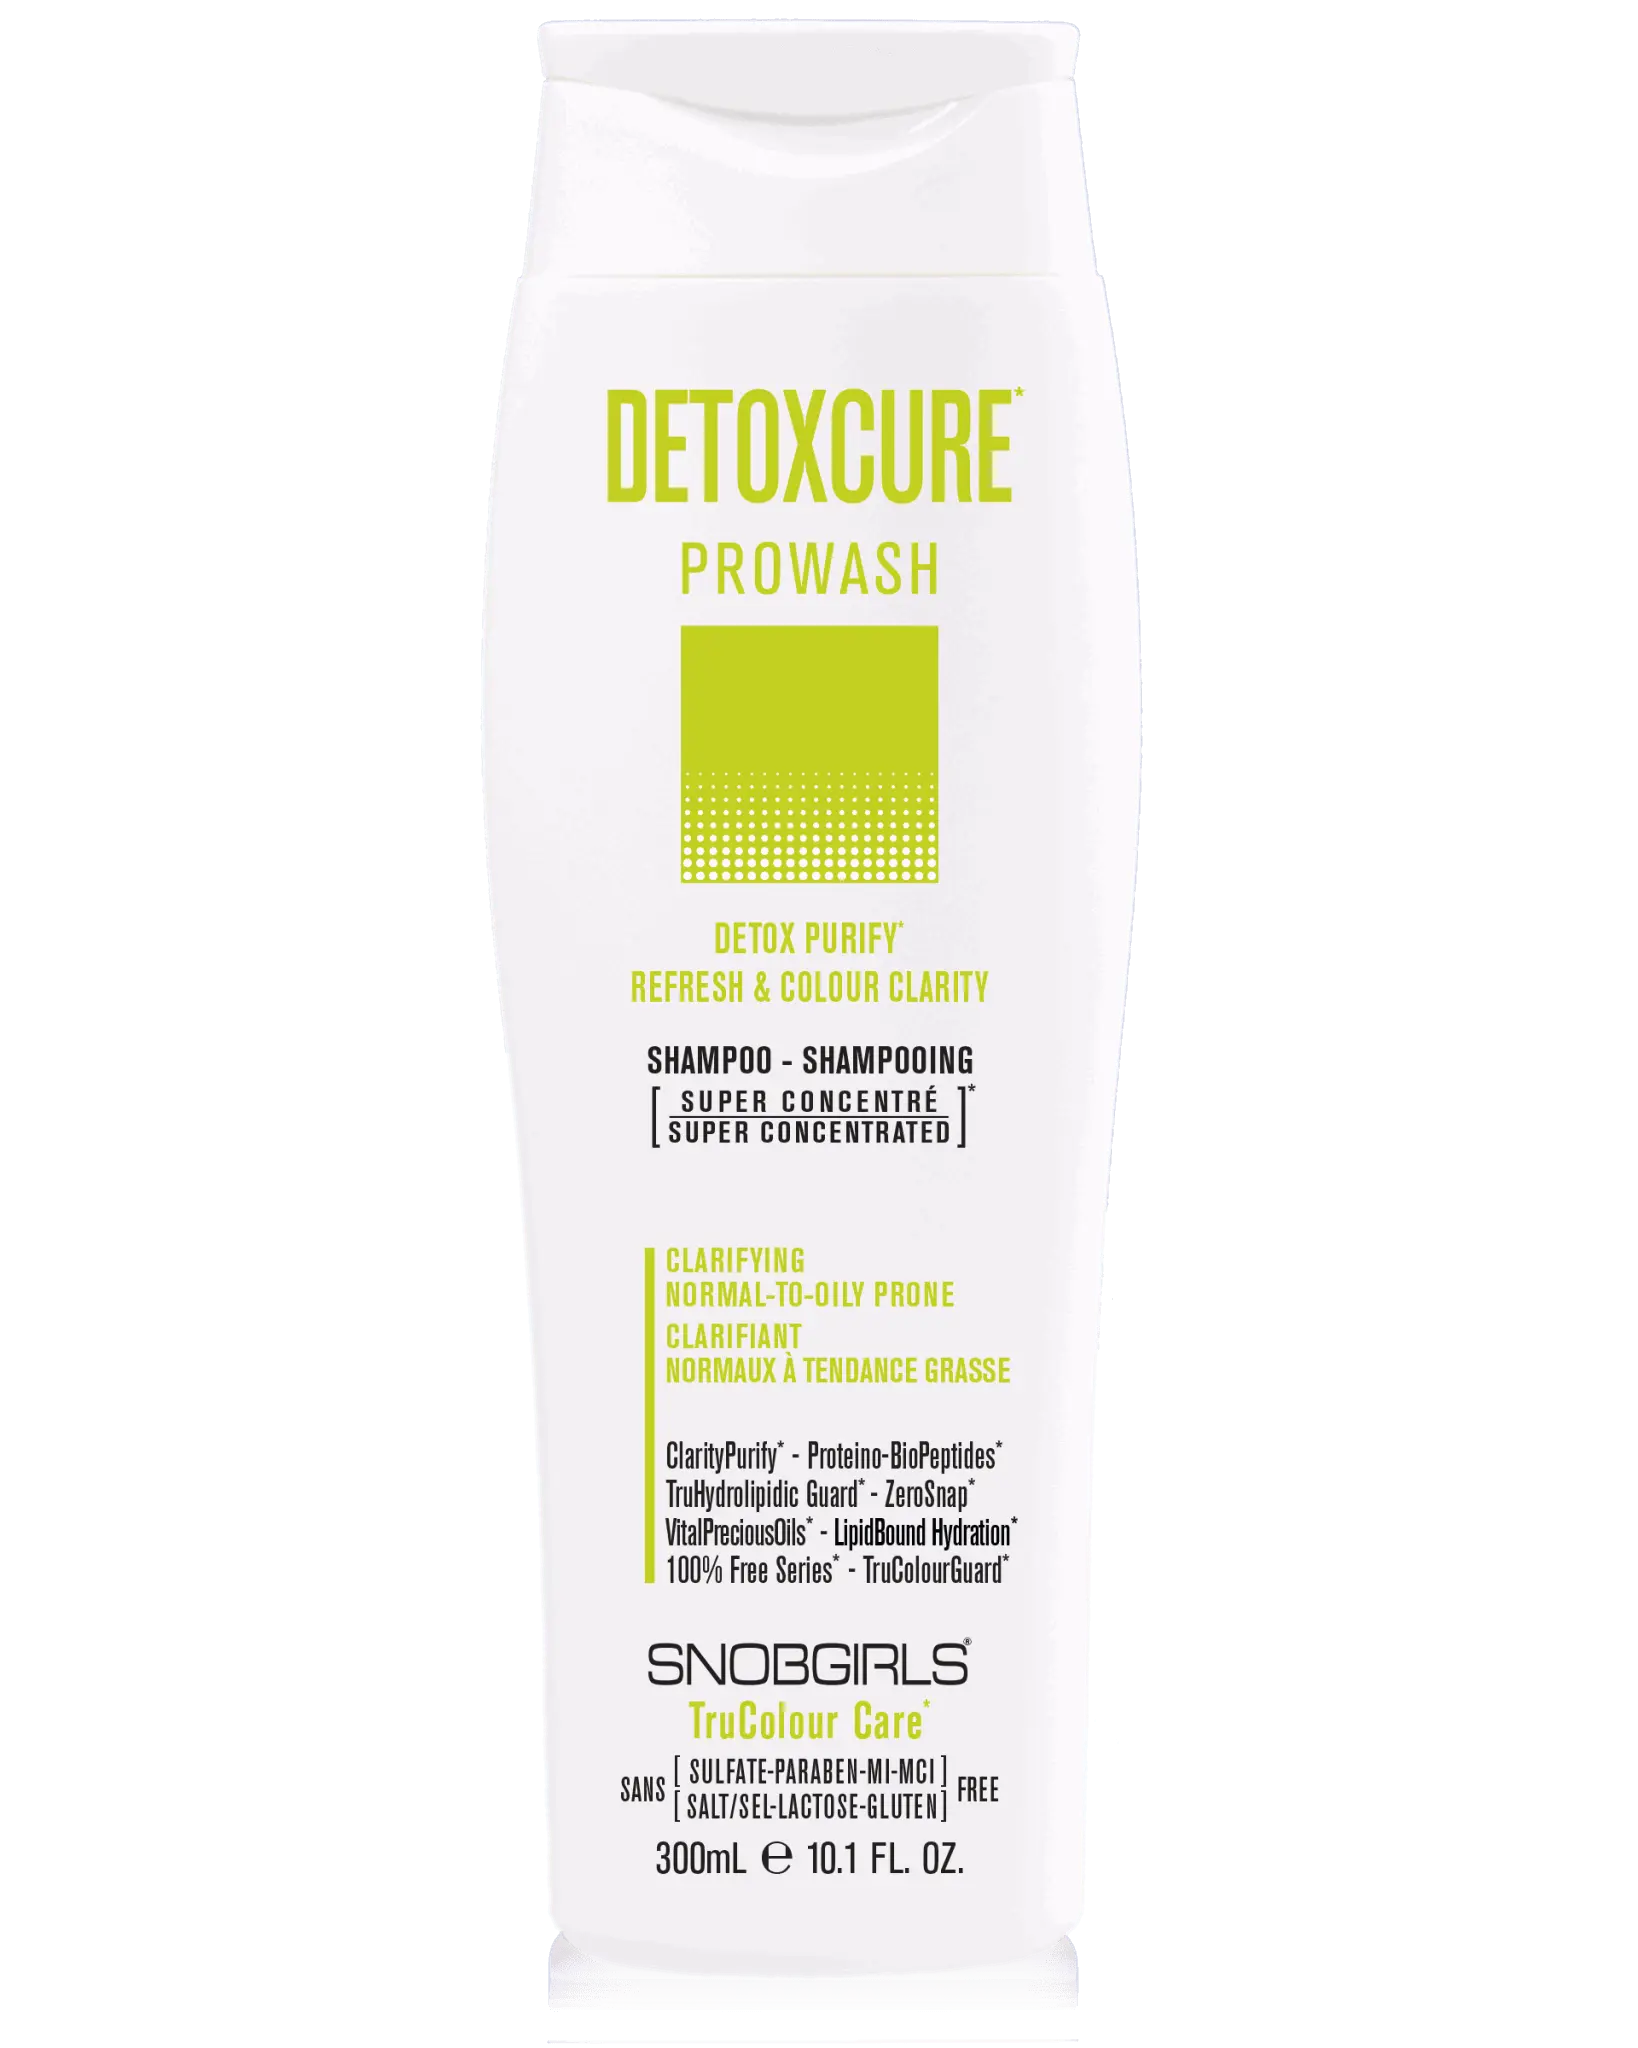 DETOXCURE Prowash (shampoo) 10.1 FL. OZ. - SNOBGIRLS.com